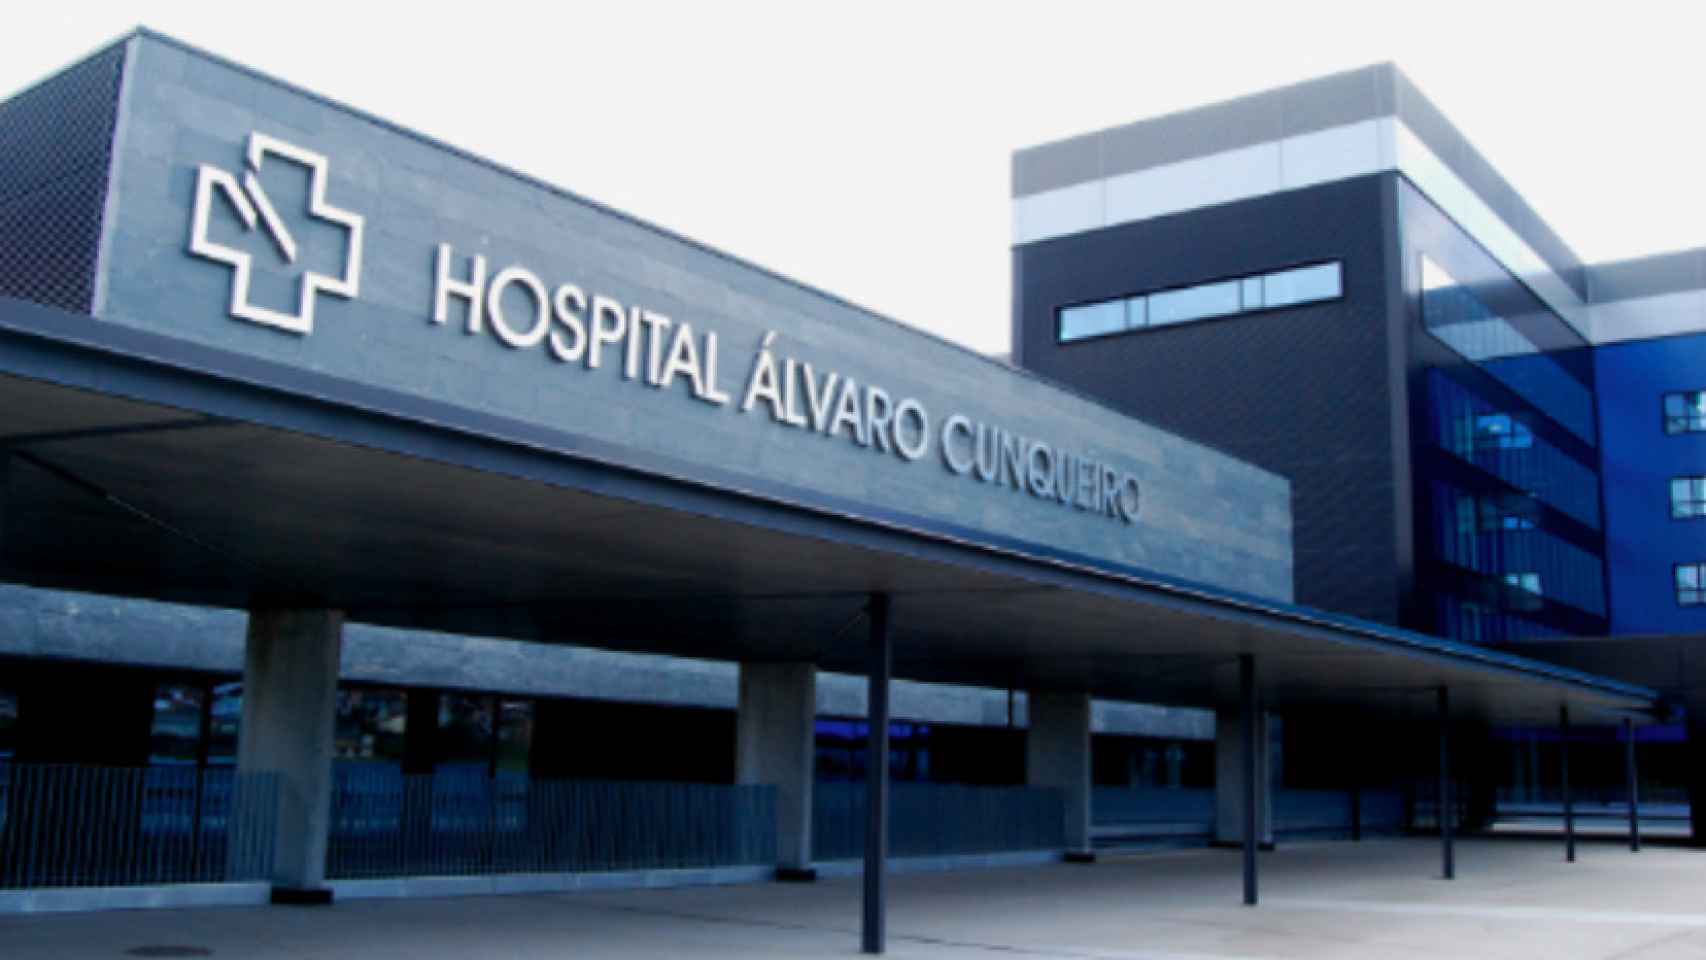 Hospital Álvaro Cunqueiro de Vigo.